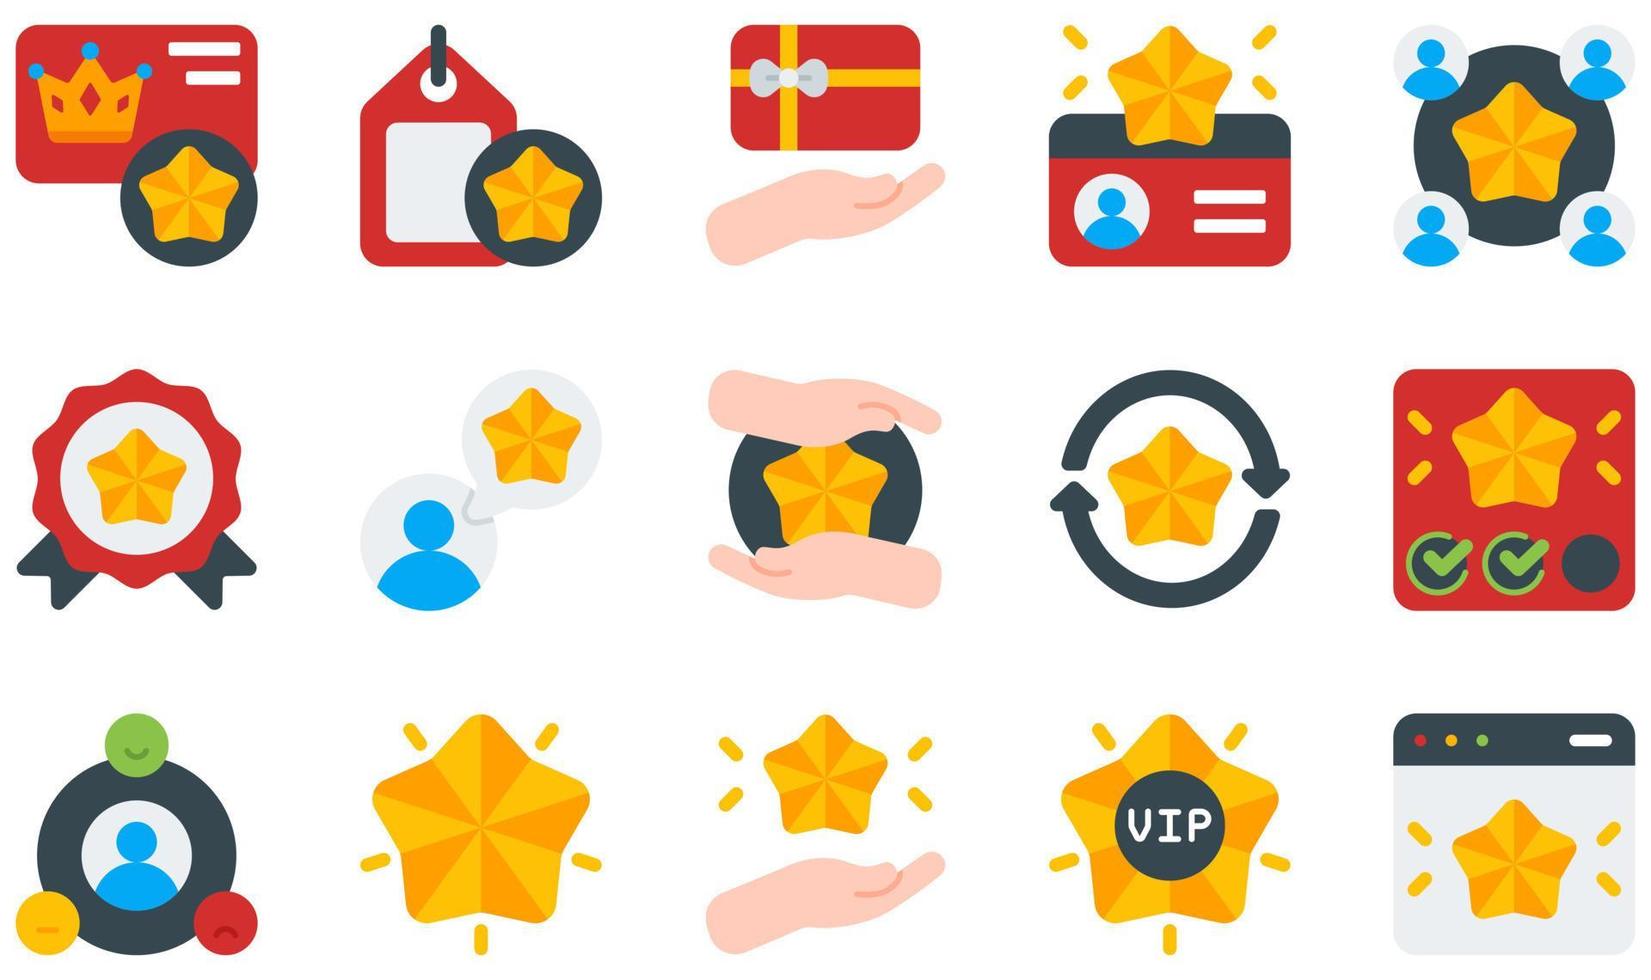 set van vector iconen gerelateerd aan klantenloyaliteit. bevat pictogrammen zoals loyaliteitskaart, loyaliteitstag, lid, lidkaart, lidmaatschap, relatie en meer.